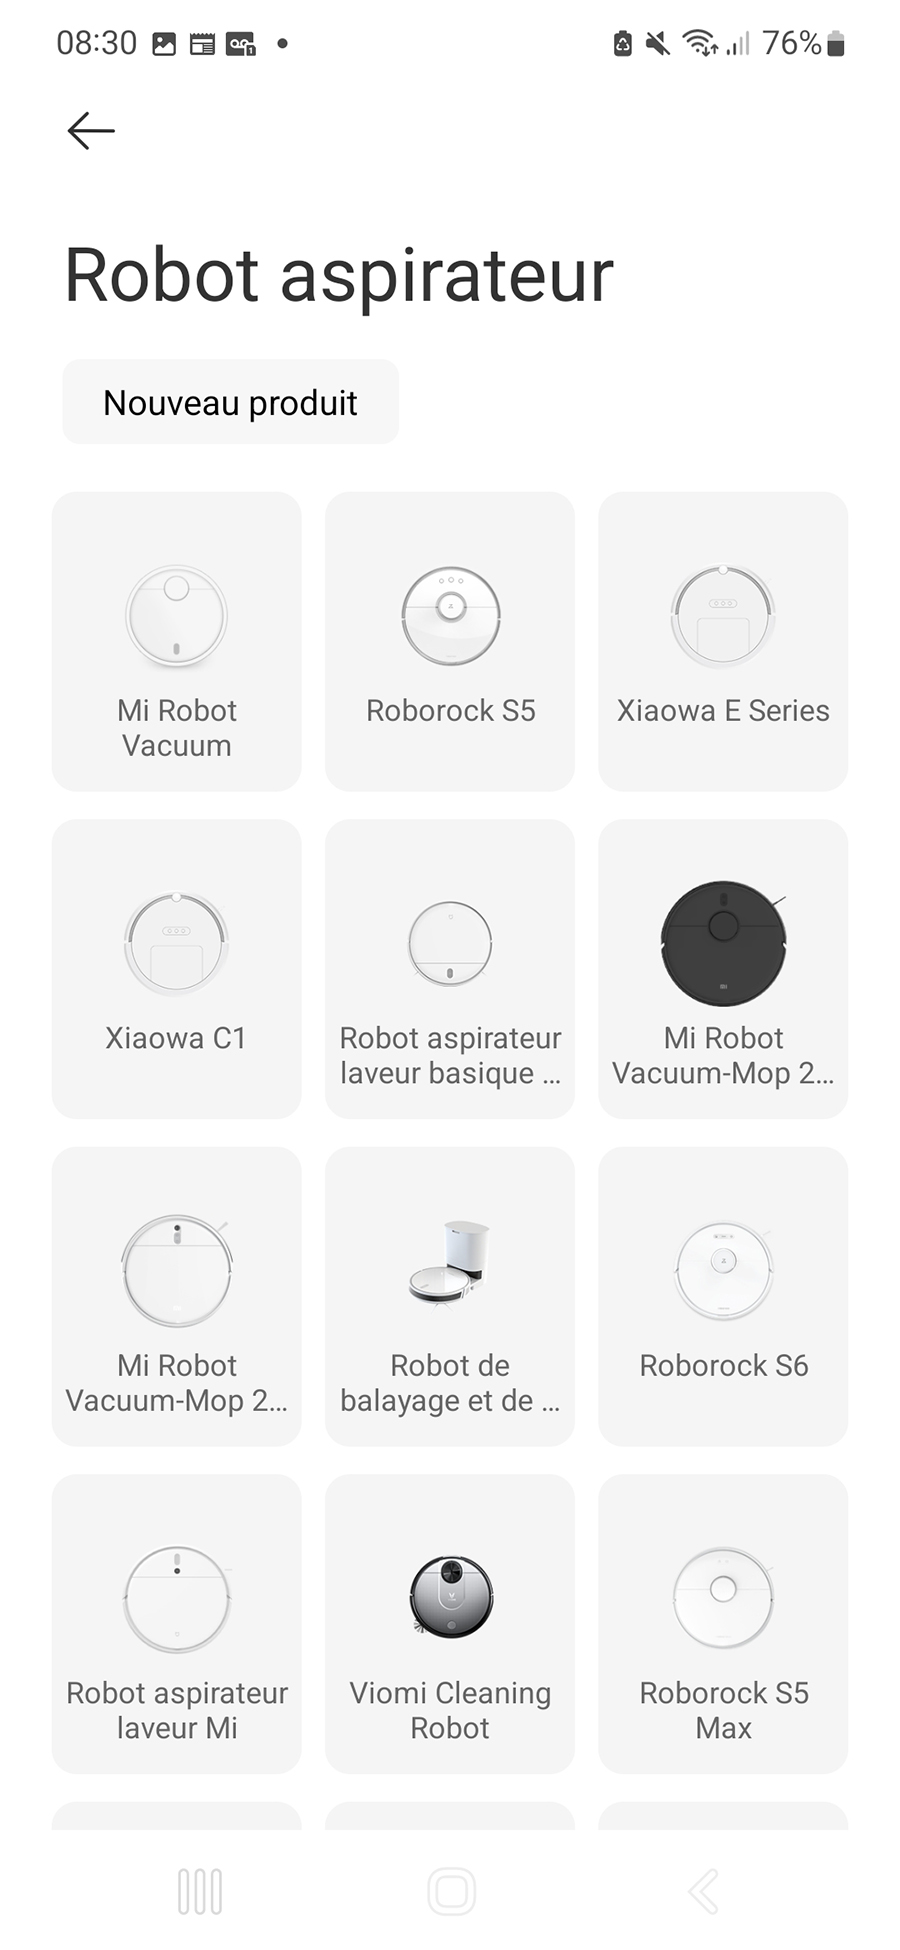 L’occasion de redécouvrir que Xiaomi propose de nombreux robots aspirateurs sous des marques multiples // Source : Yazid Amer - Frandroid